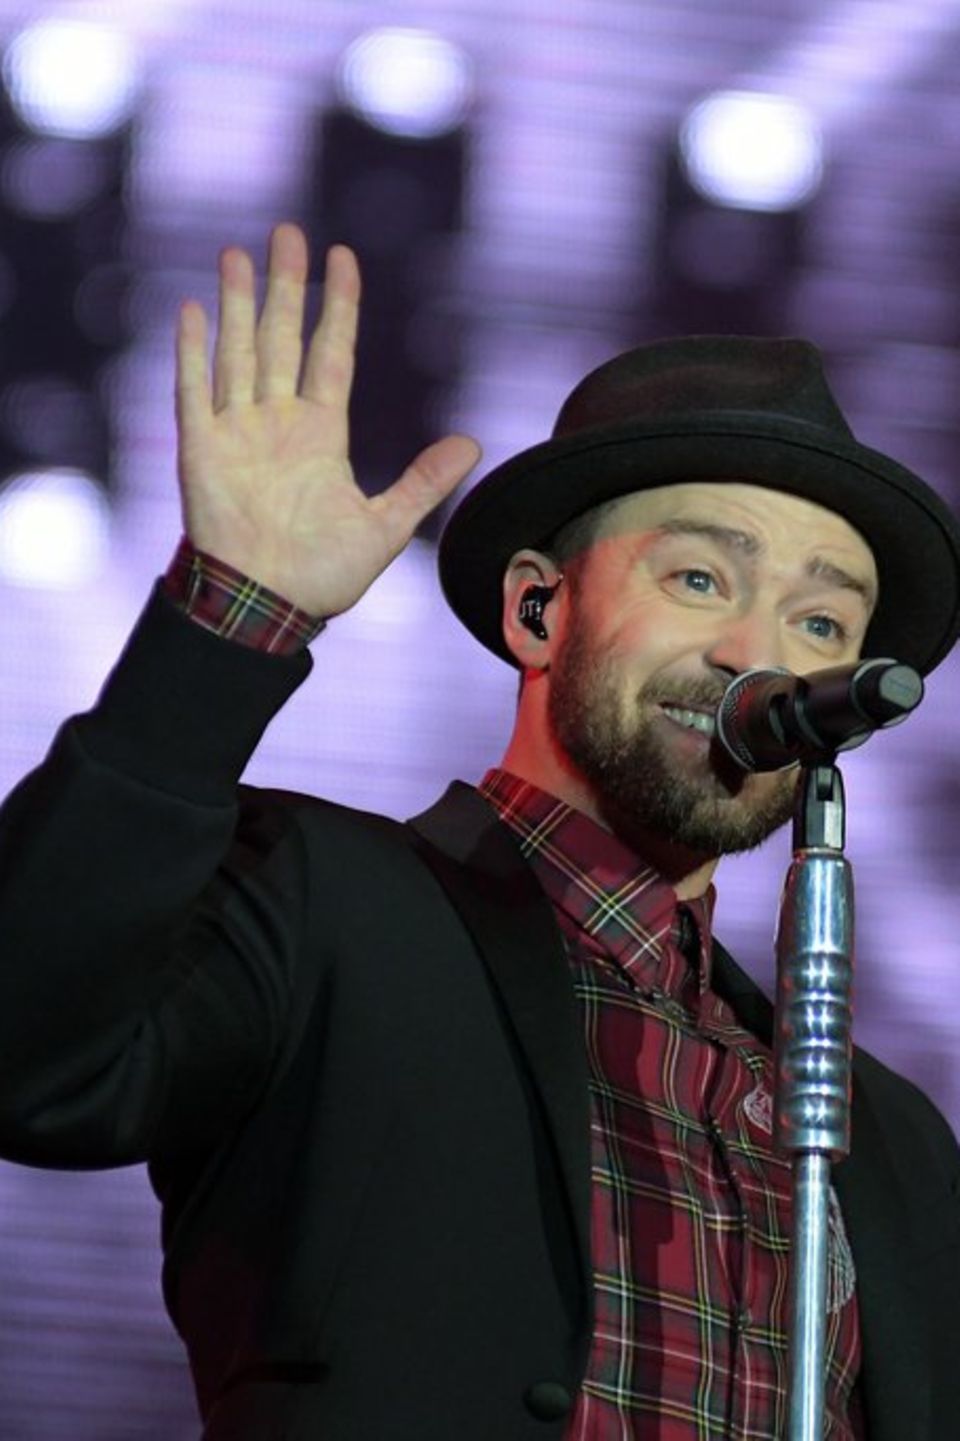 Justin Timberlake machte sich zuletzt eher rar in der Öffentlichkeit, trat nur bei ausgewählten Events auf. Sein jüngstes Albu